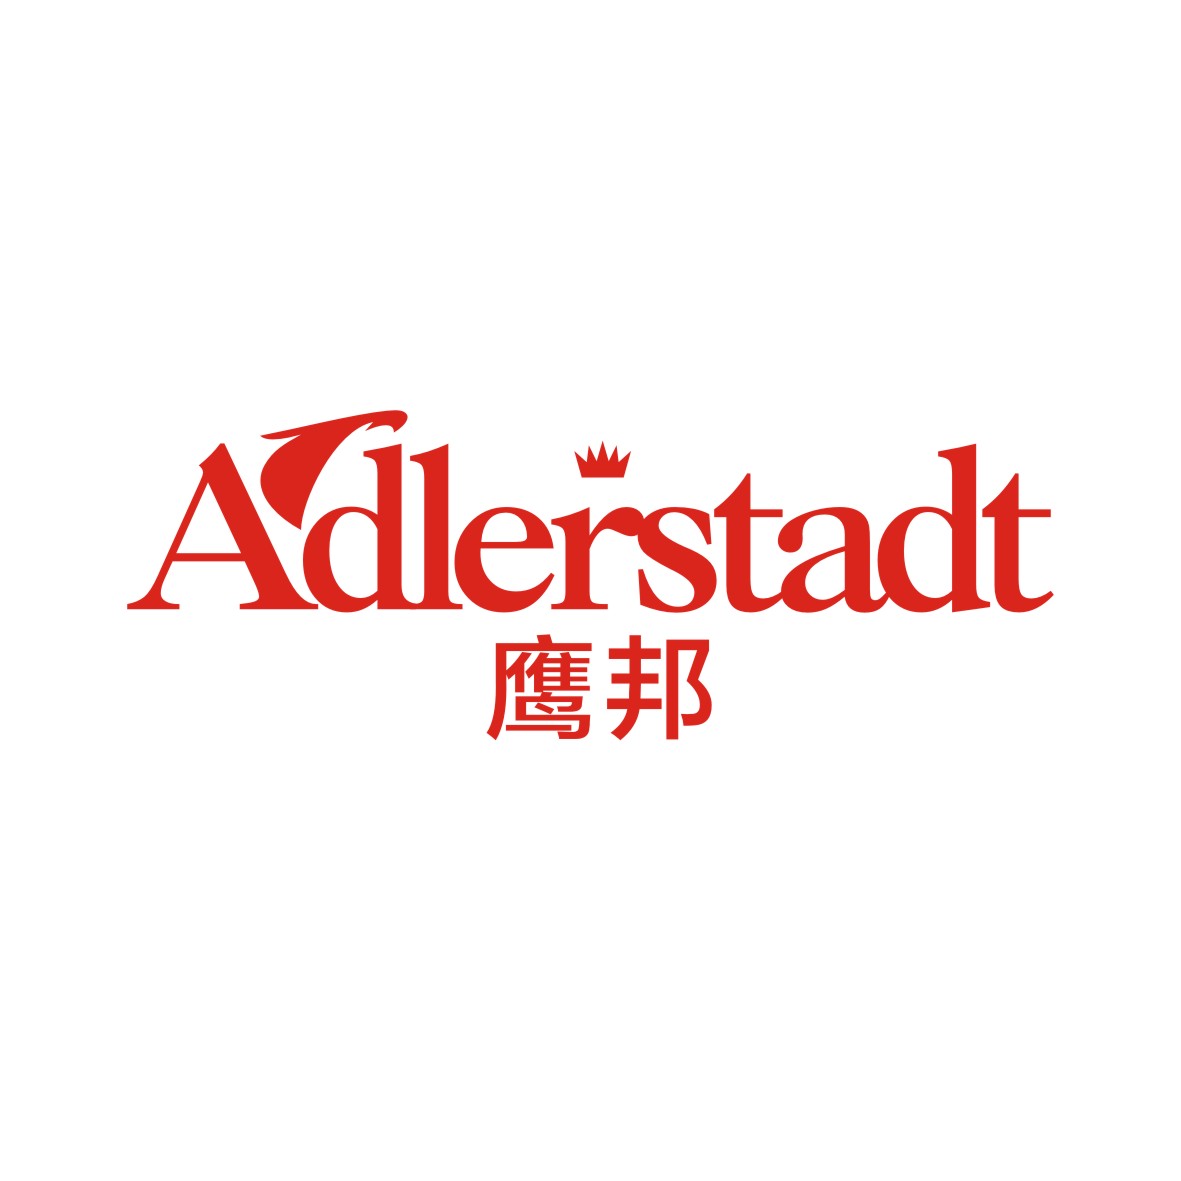 广州市君衍电子商务商行商标鹰邦 ADLERSTADT（29类）商标转让流程及费用